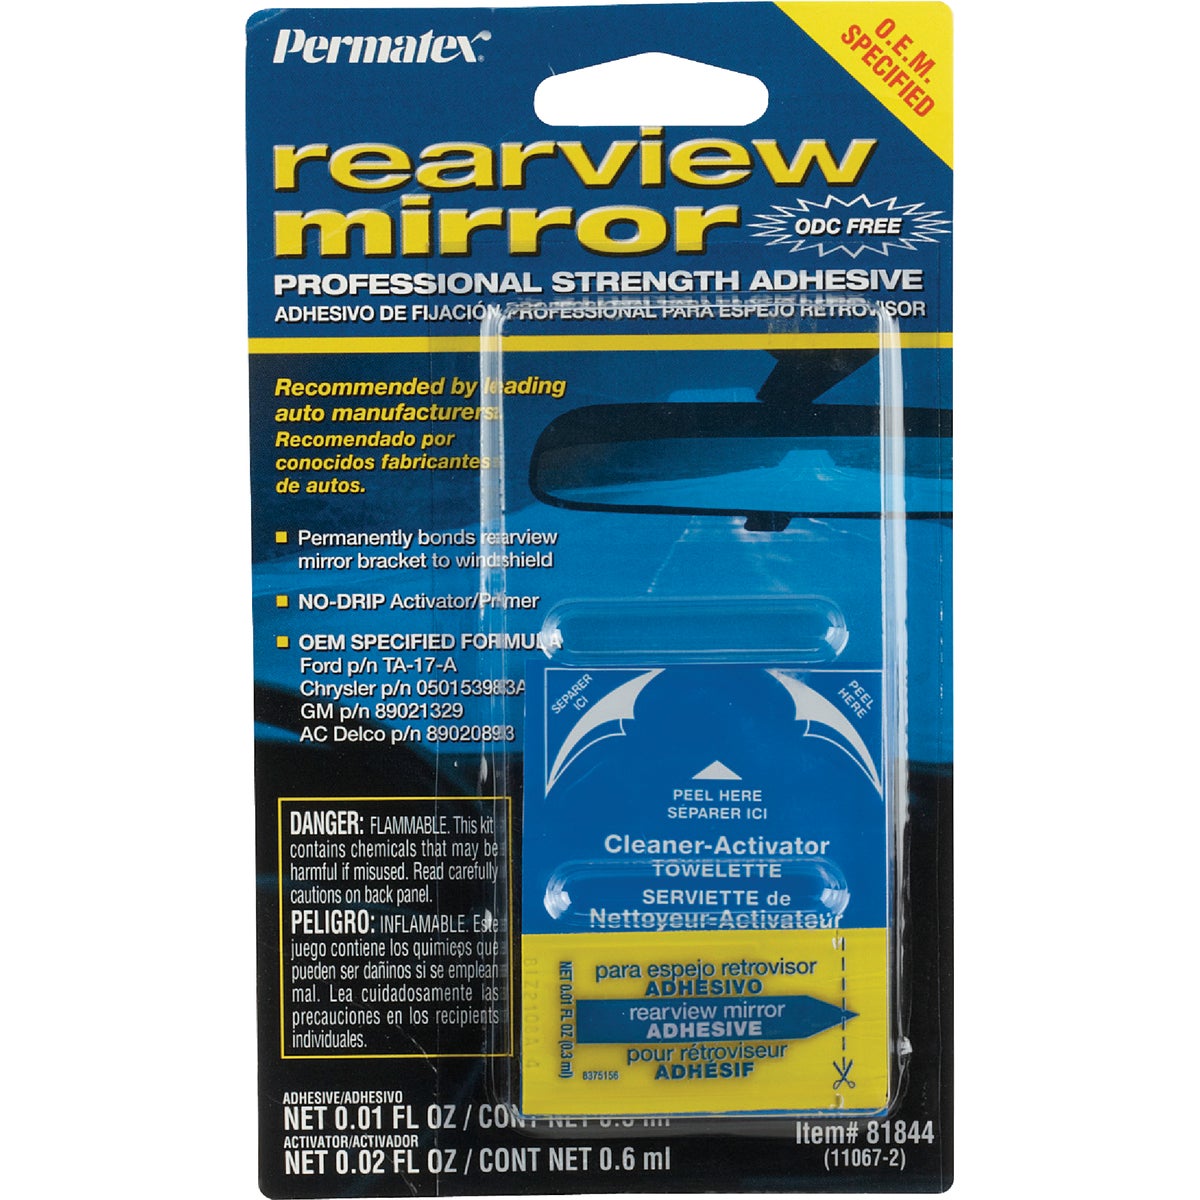 Item 579718, Permatex rearview mirror adhesive.